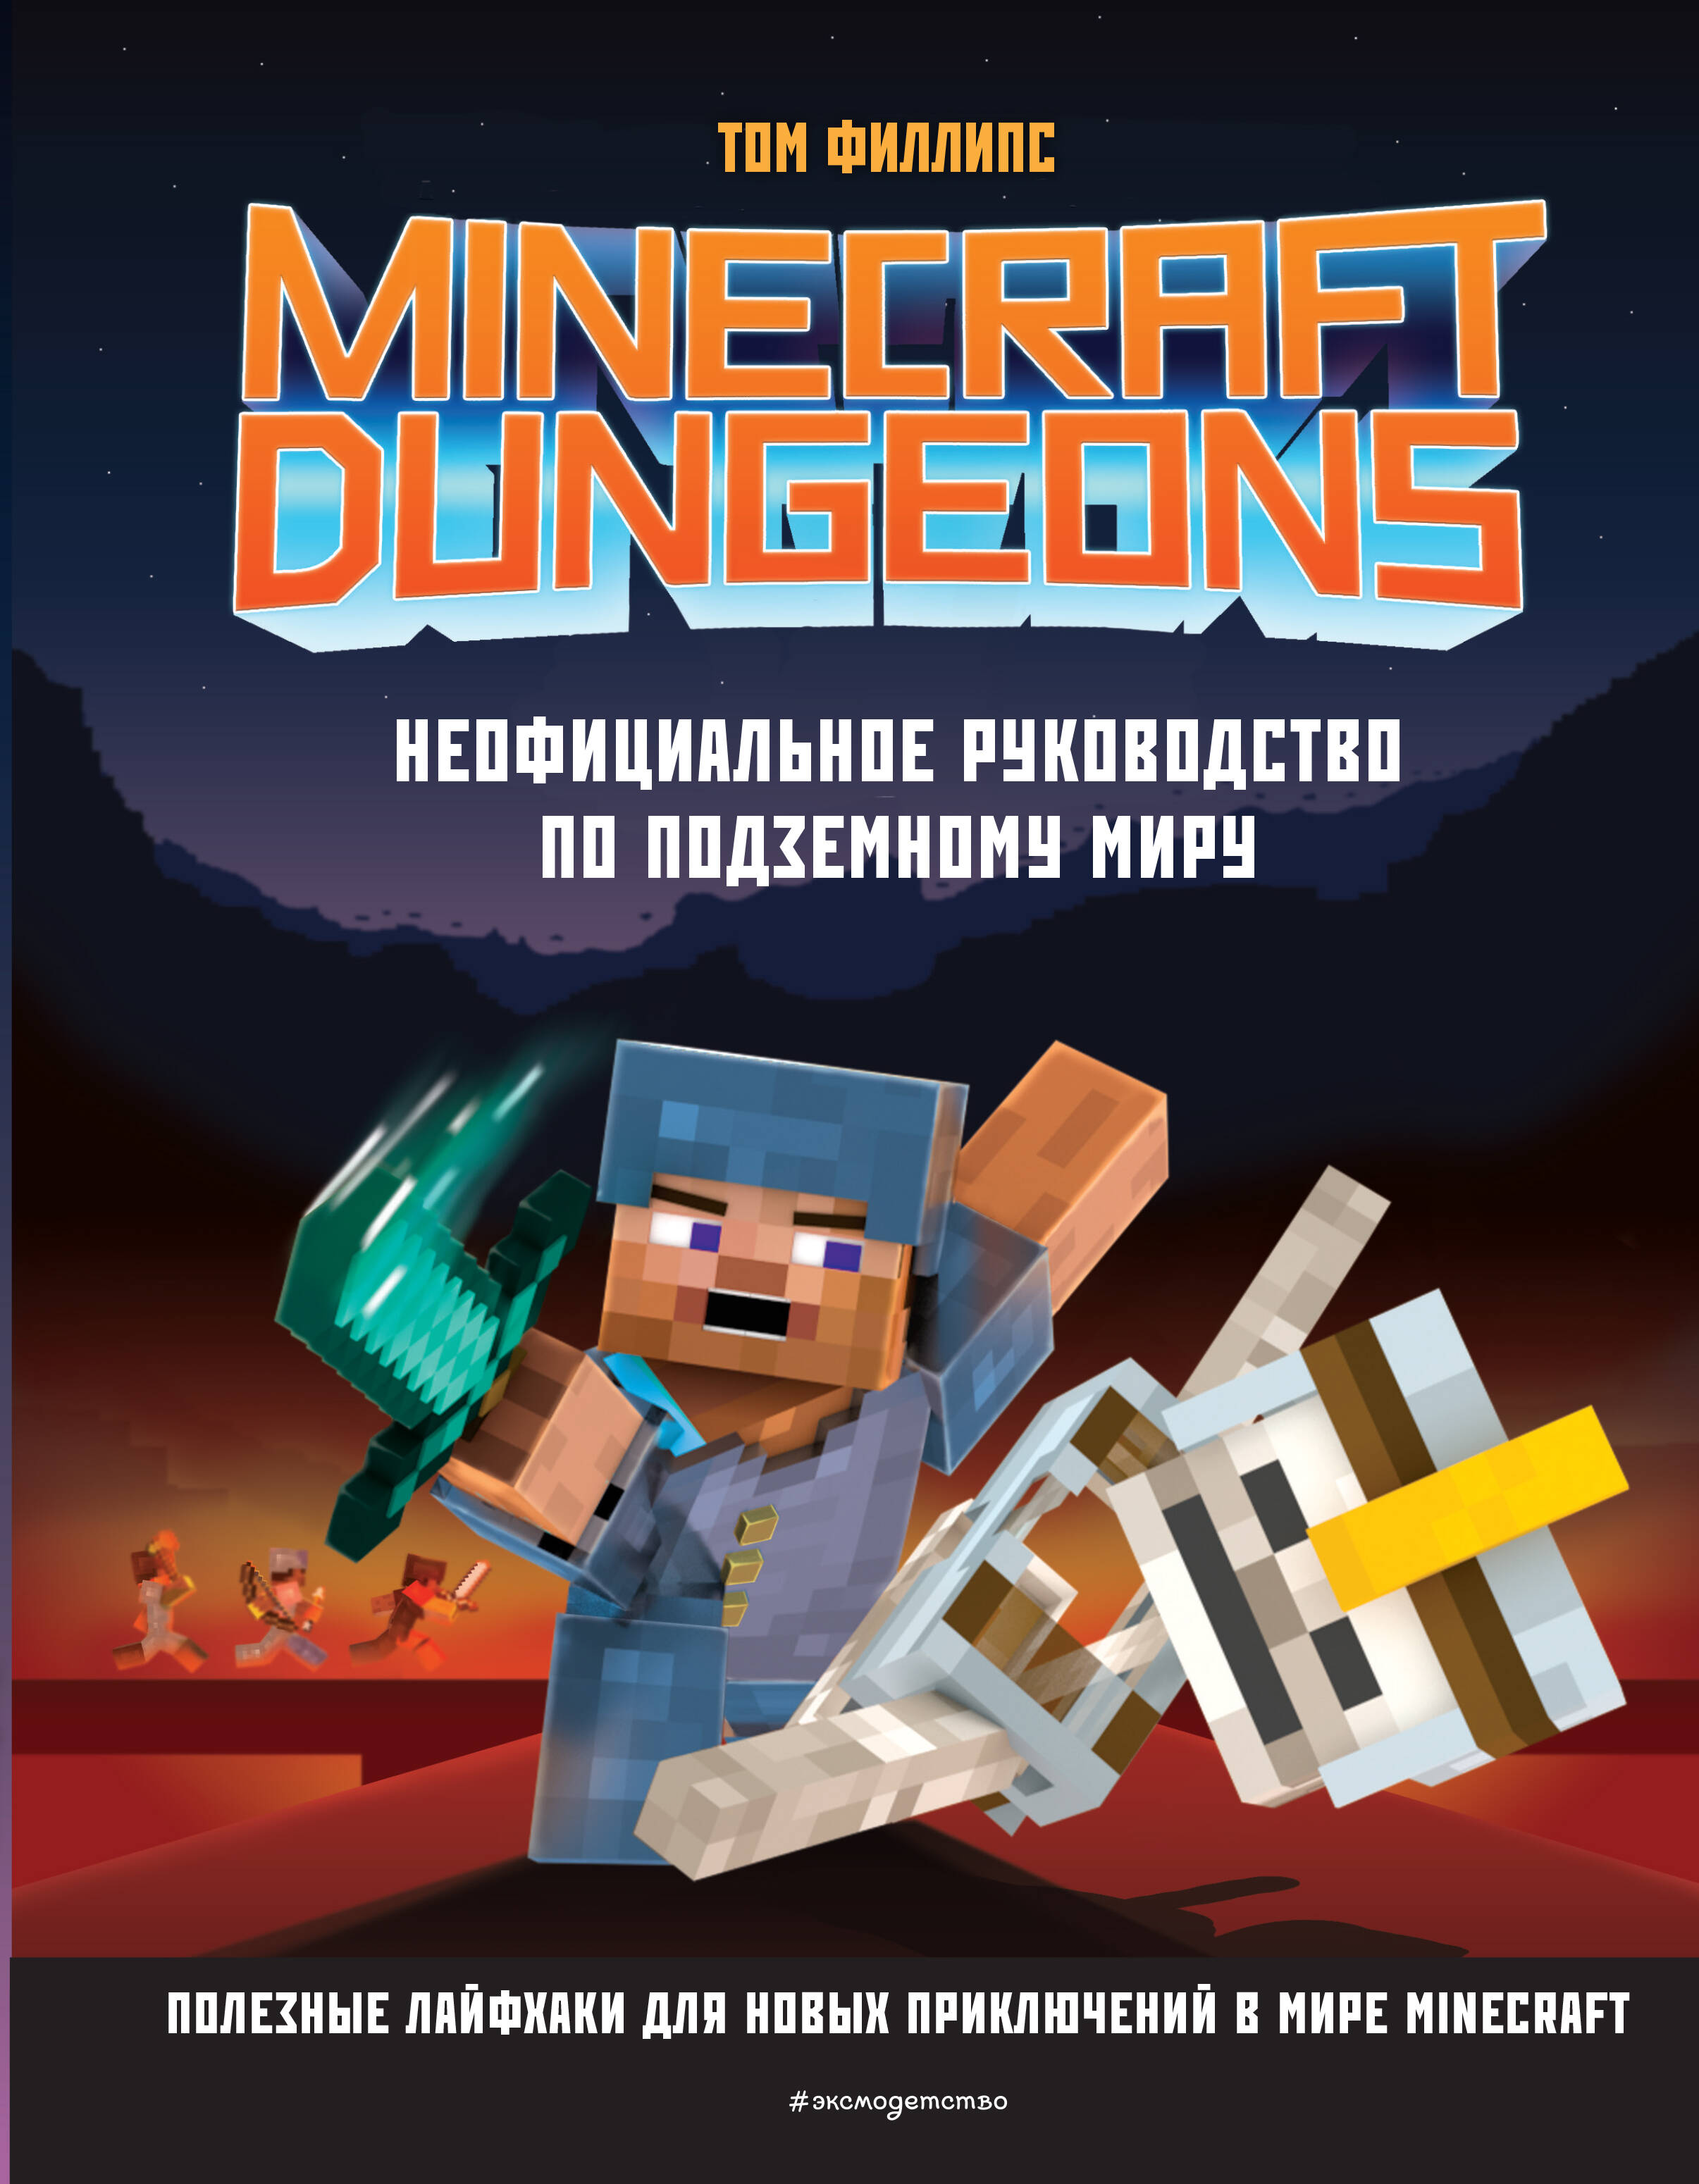 Филлипс Том Minecraft Dungeons. Неофициальное руководство по подземному миру филлипс том minecraft dungeons неофициальное руководство по подземному миру